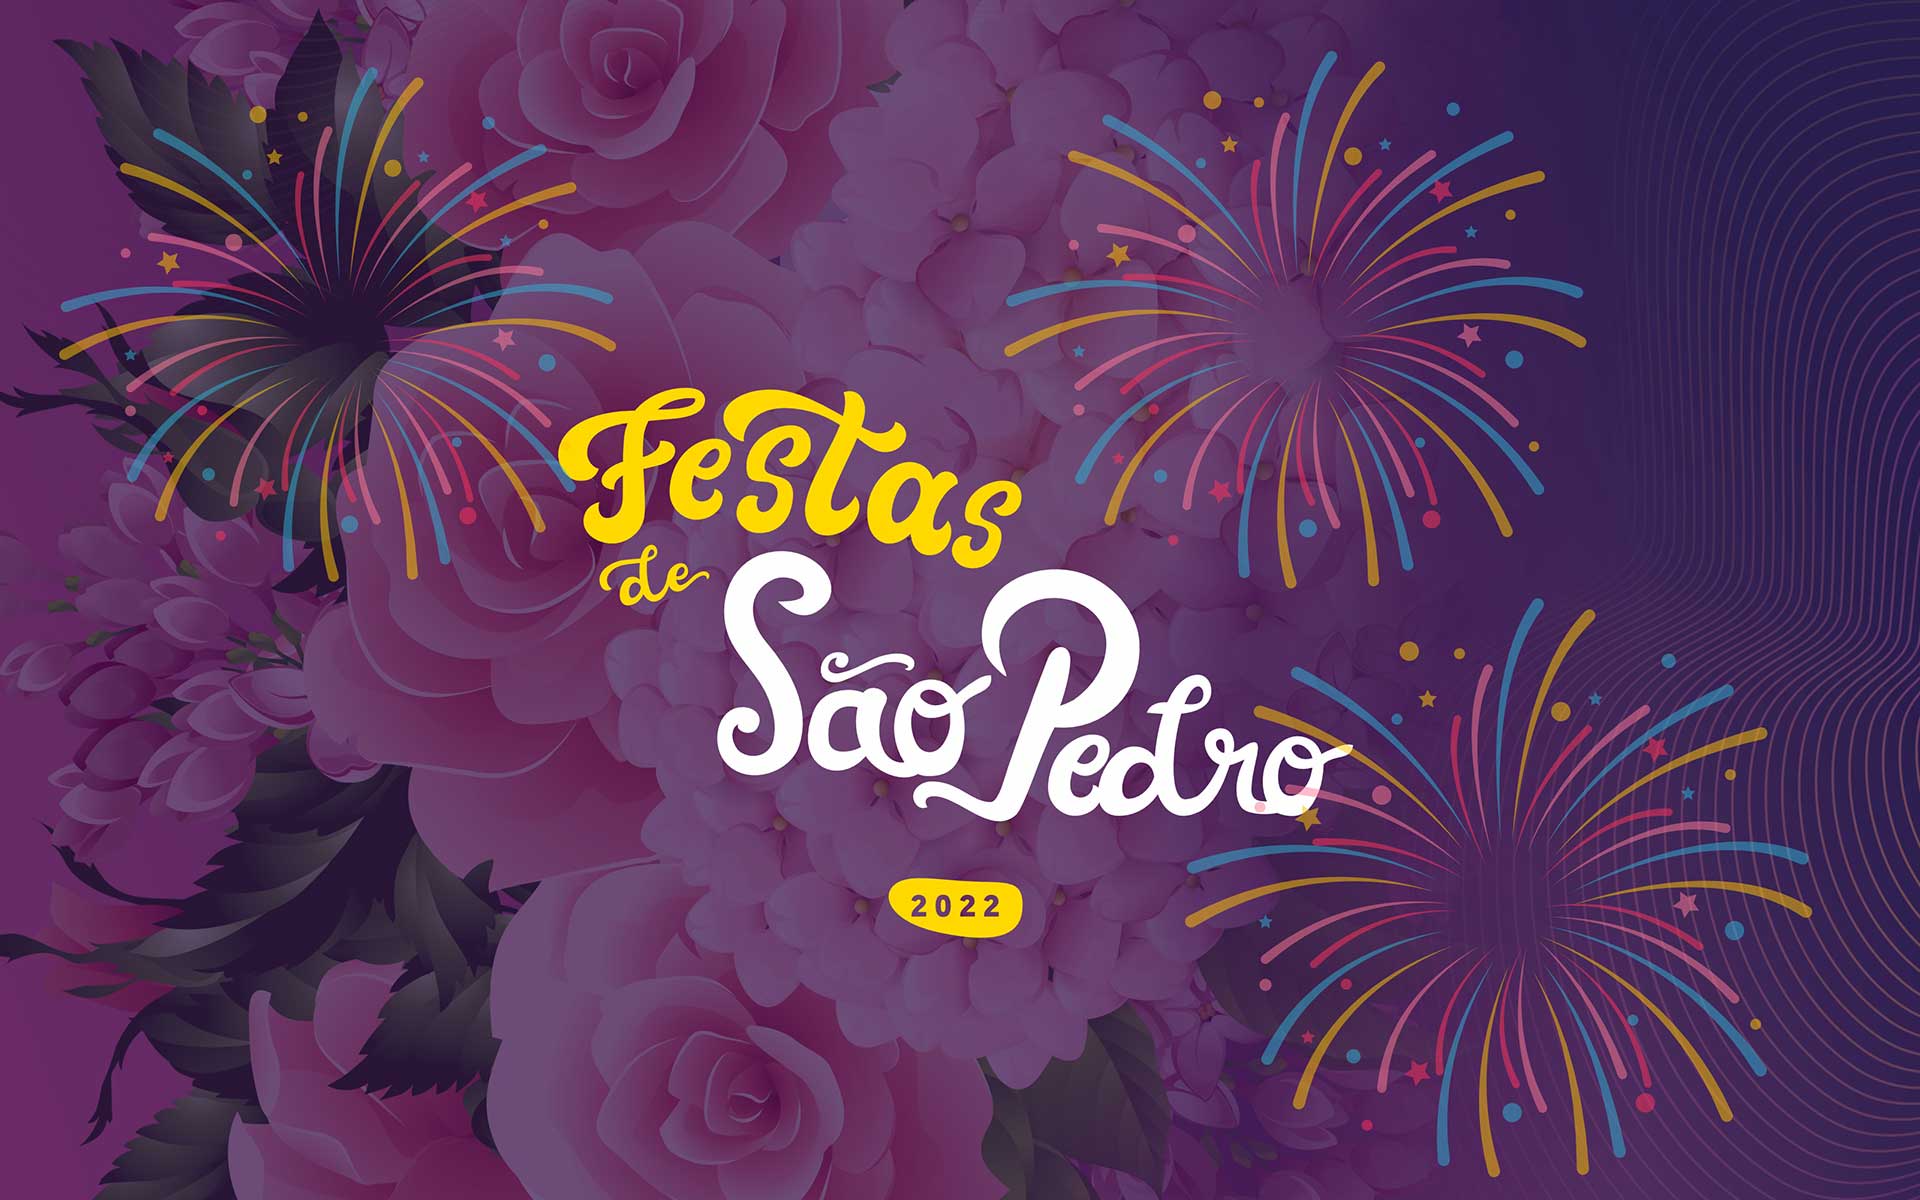 Festas S.Pedro 2022 Felgueiras